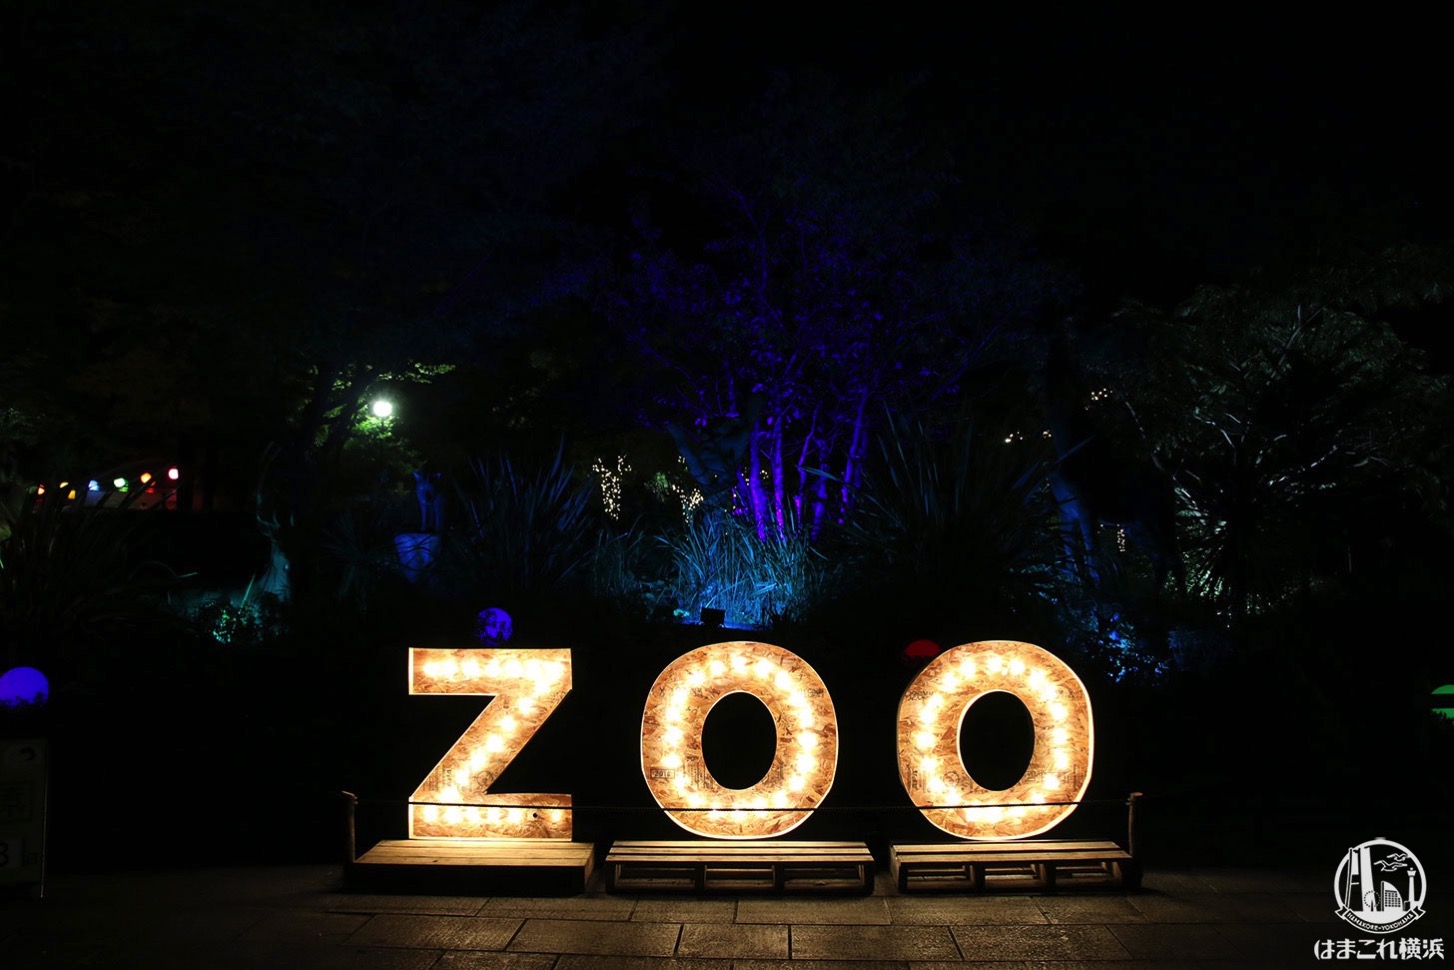 ズーラシア・野毛山動物園・金沢動物園、臨時休園発表 2月29日～3月15日まで